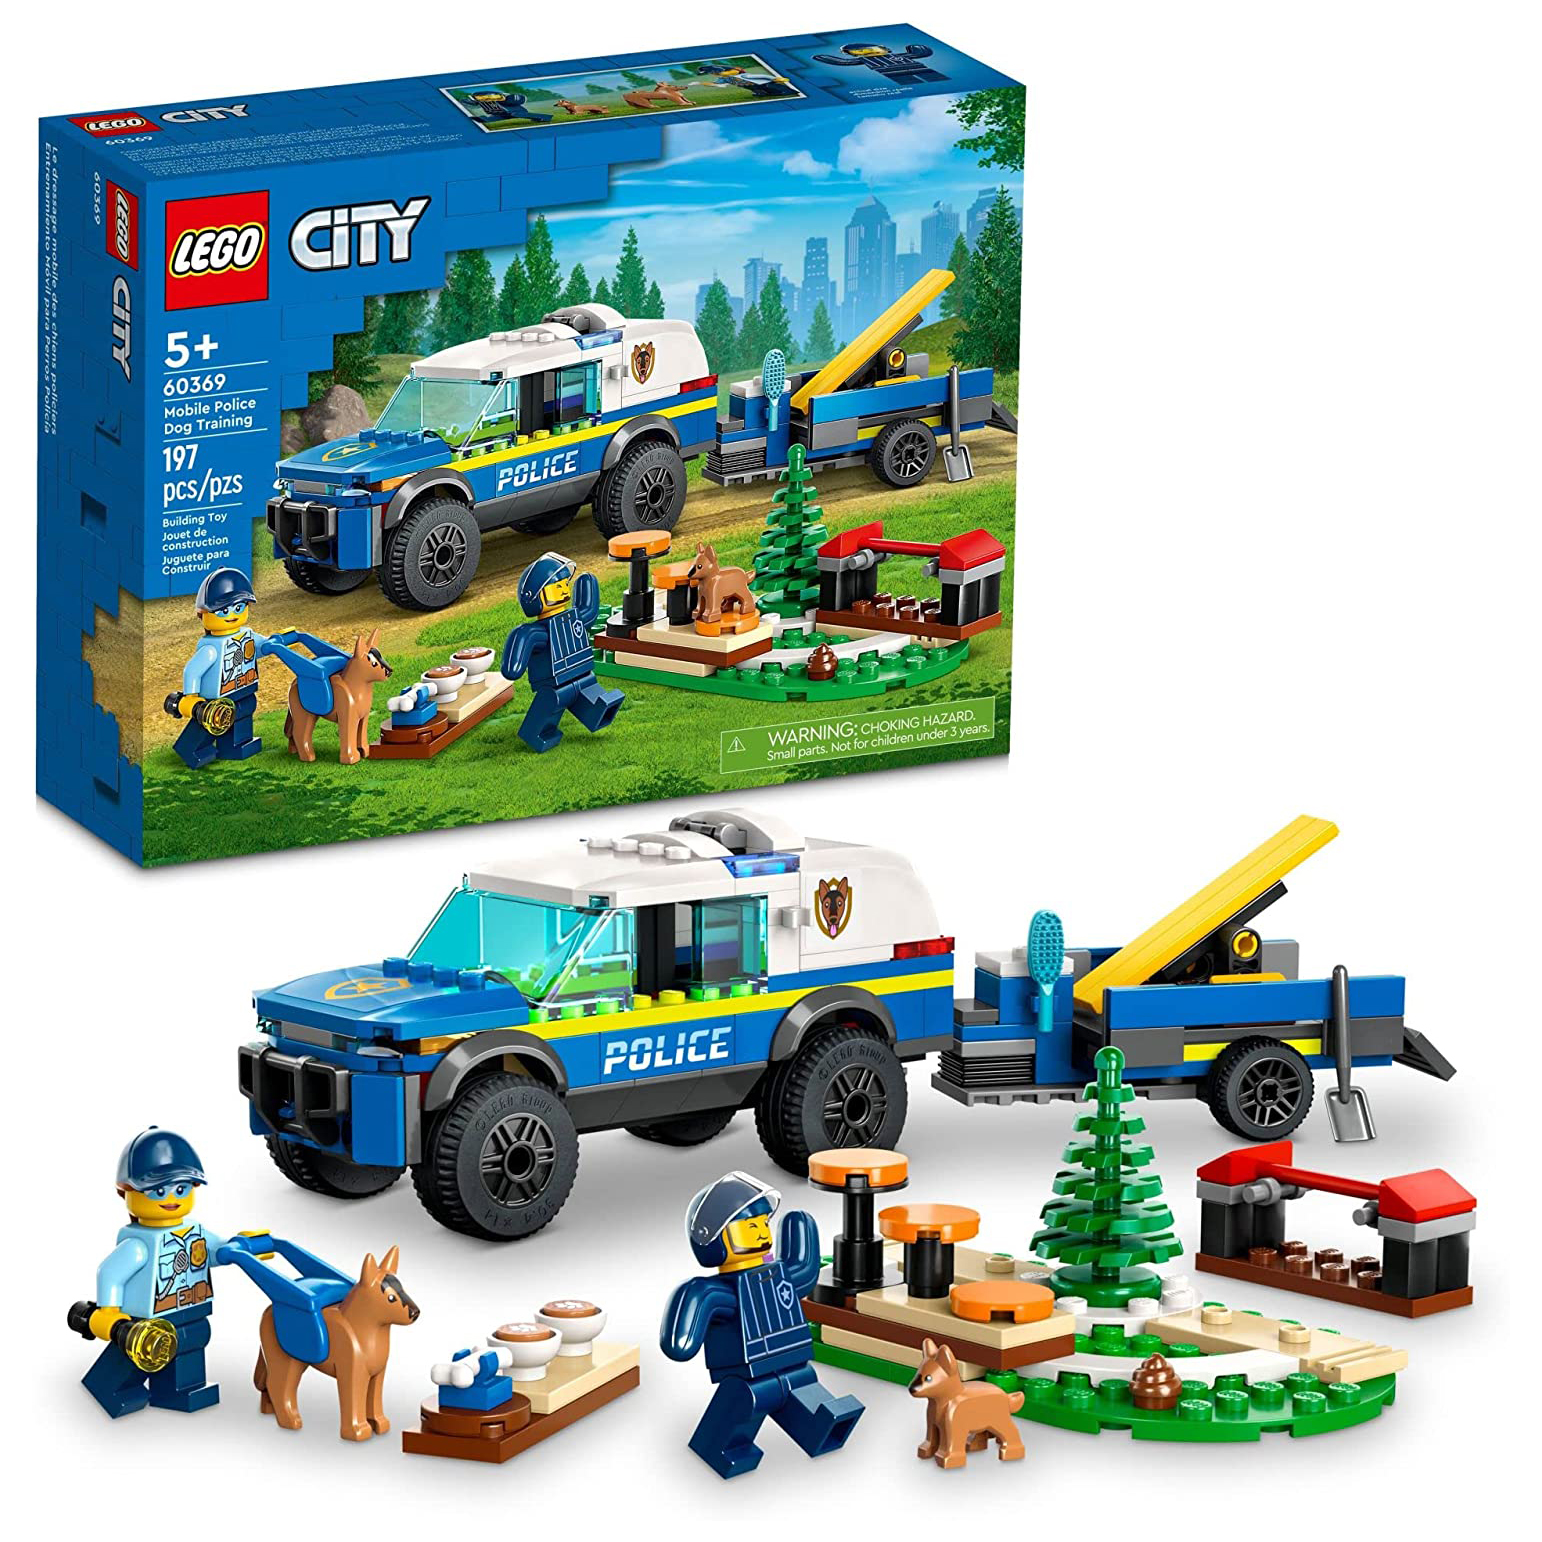 Конструктор LEGO City Дрессировка полицейской собаки на выезде, 197 деталей, 60369 лучший друг простое пошаговое руководство по решению даже самых сложных проблем в воспитании собаки